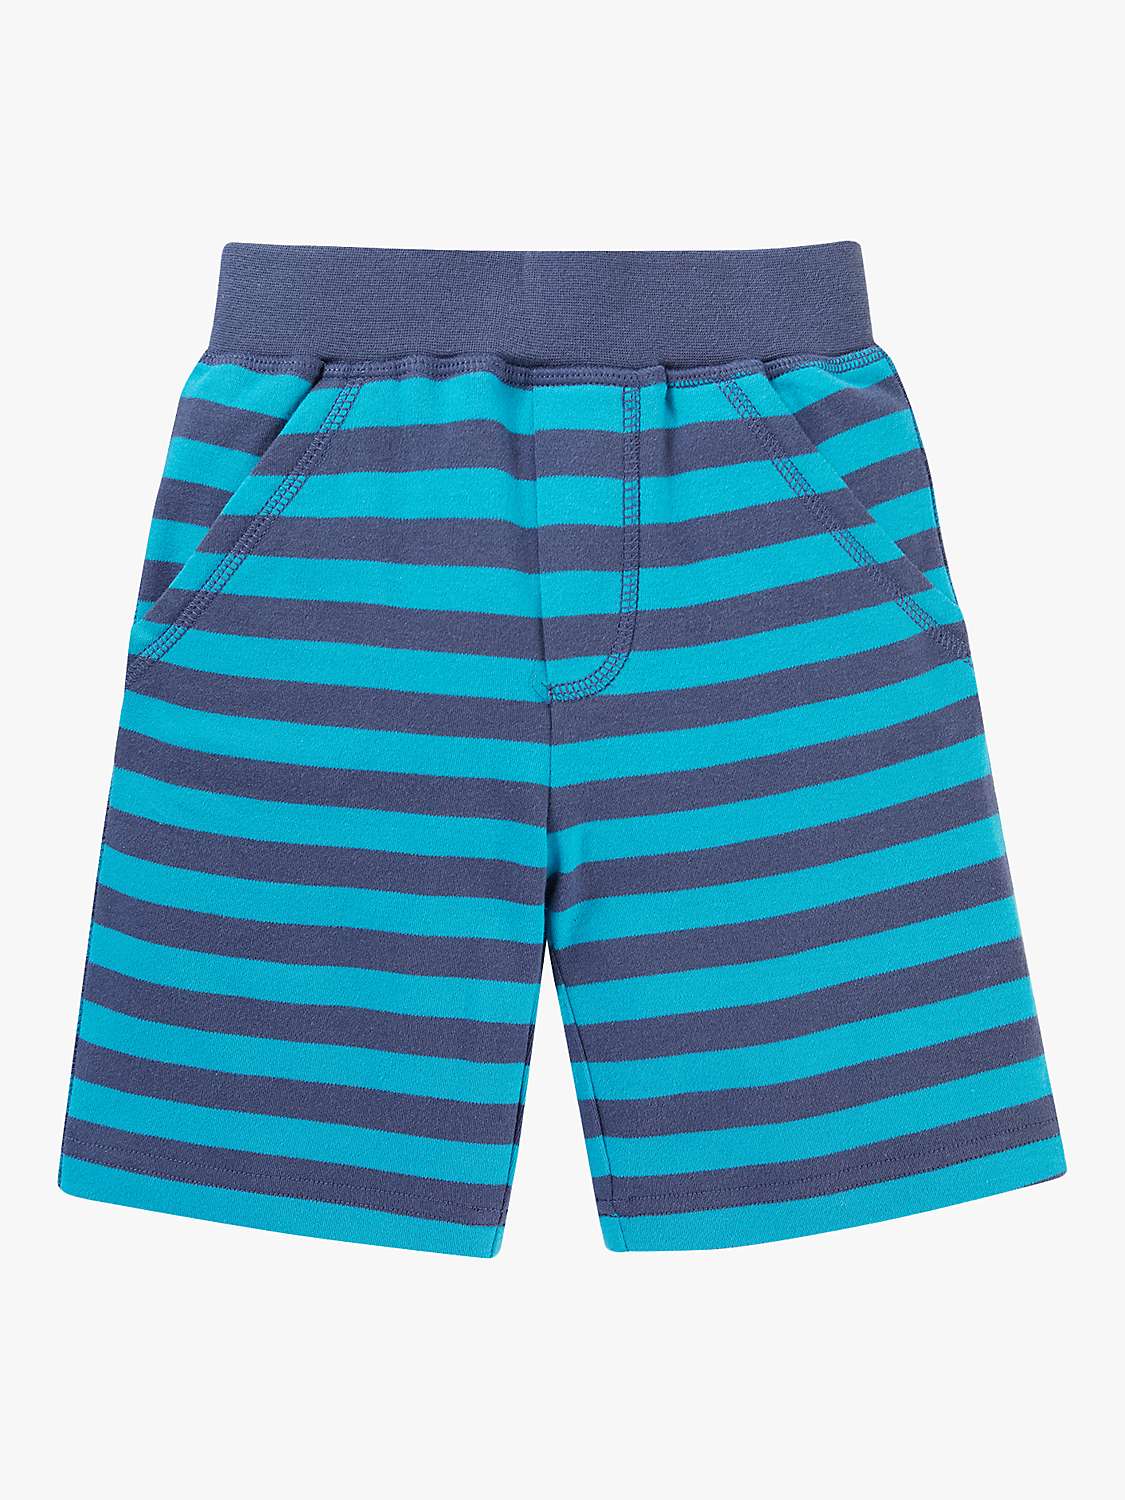 Buy Frugi Kids' Organic Cotton Ellis Stripe Shorts, Tropical Navy Online at johnlewis.com